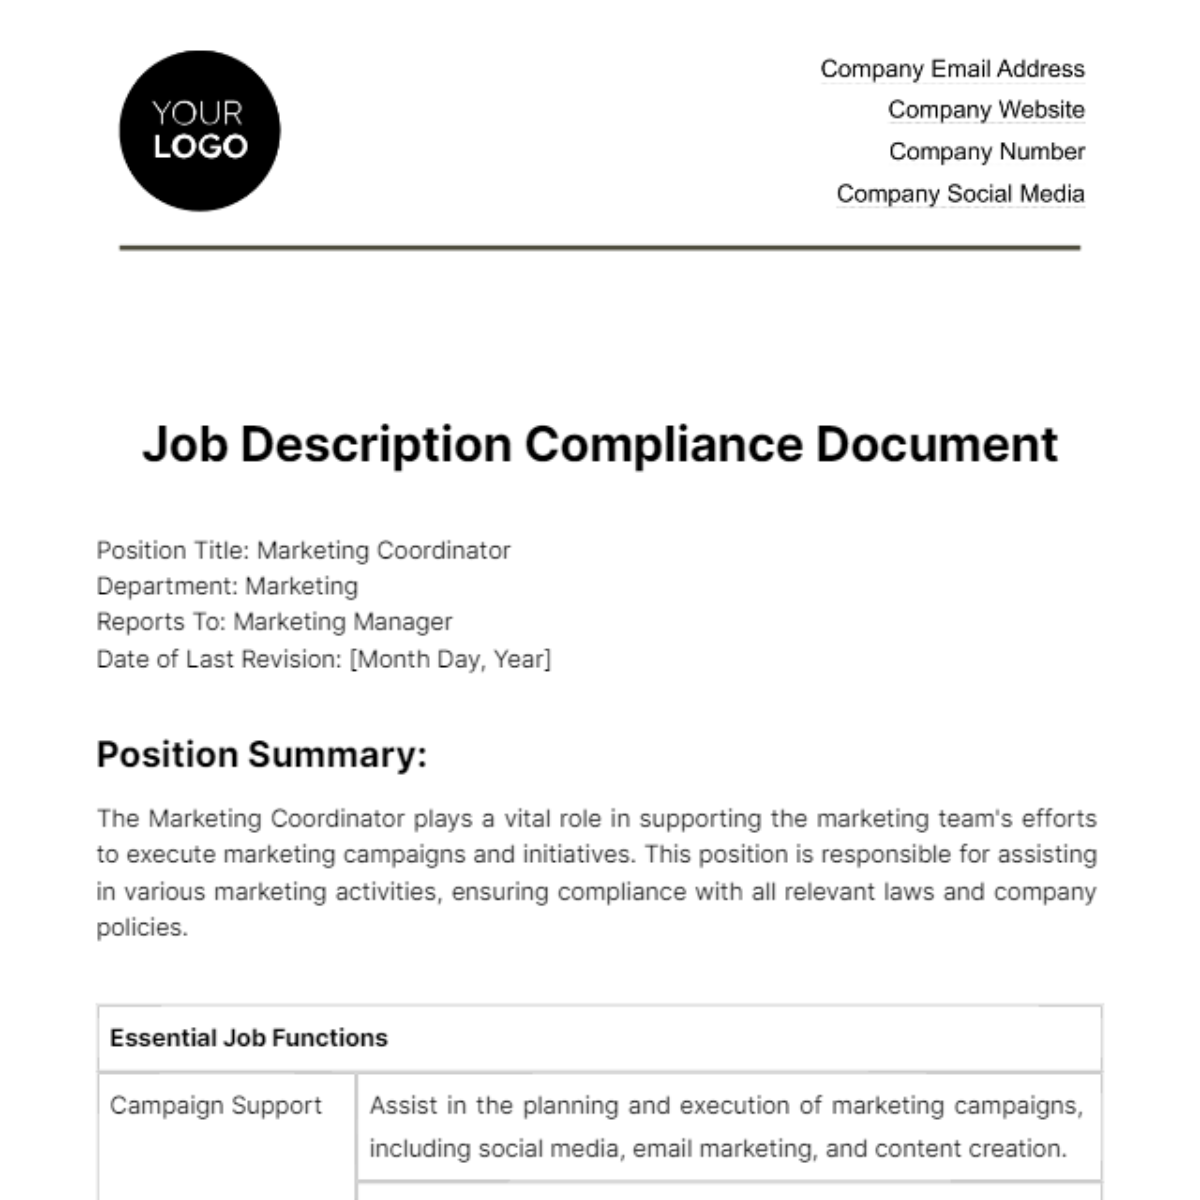 Job Description Compliance Document HR Template